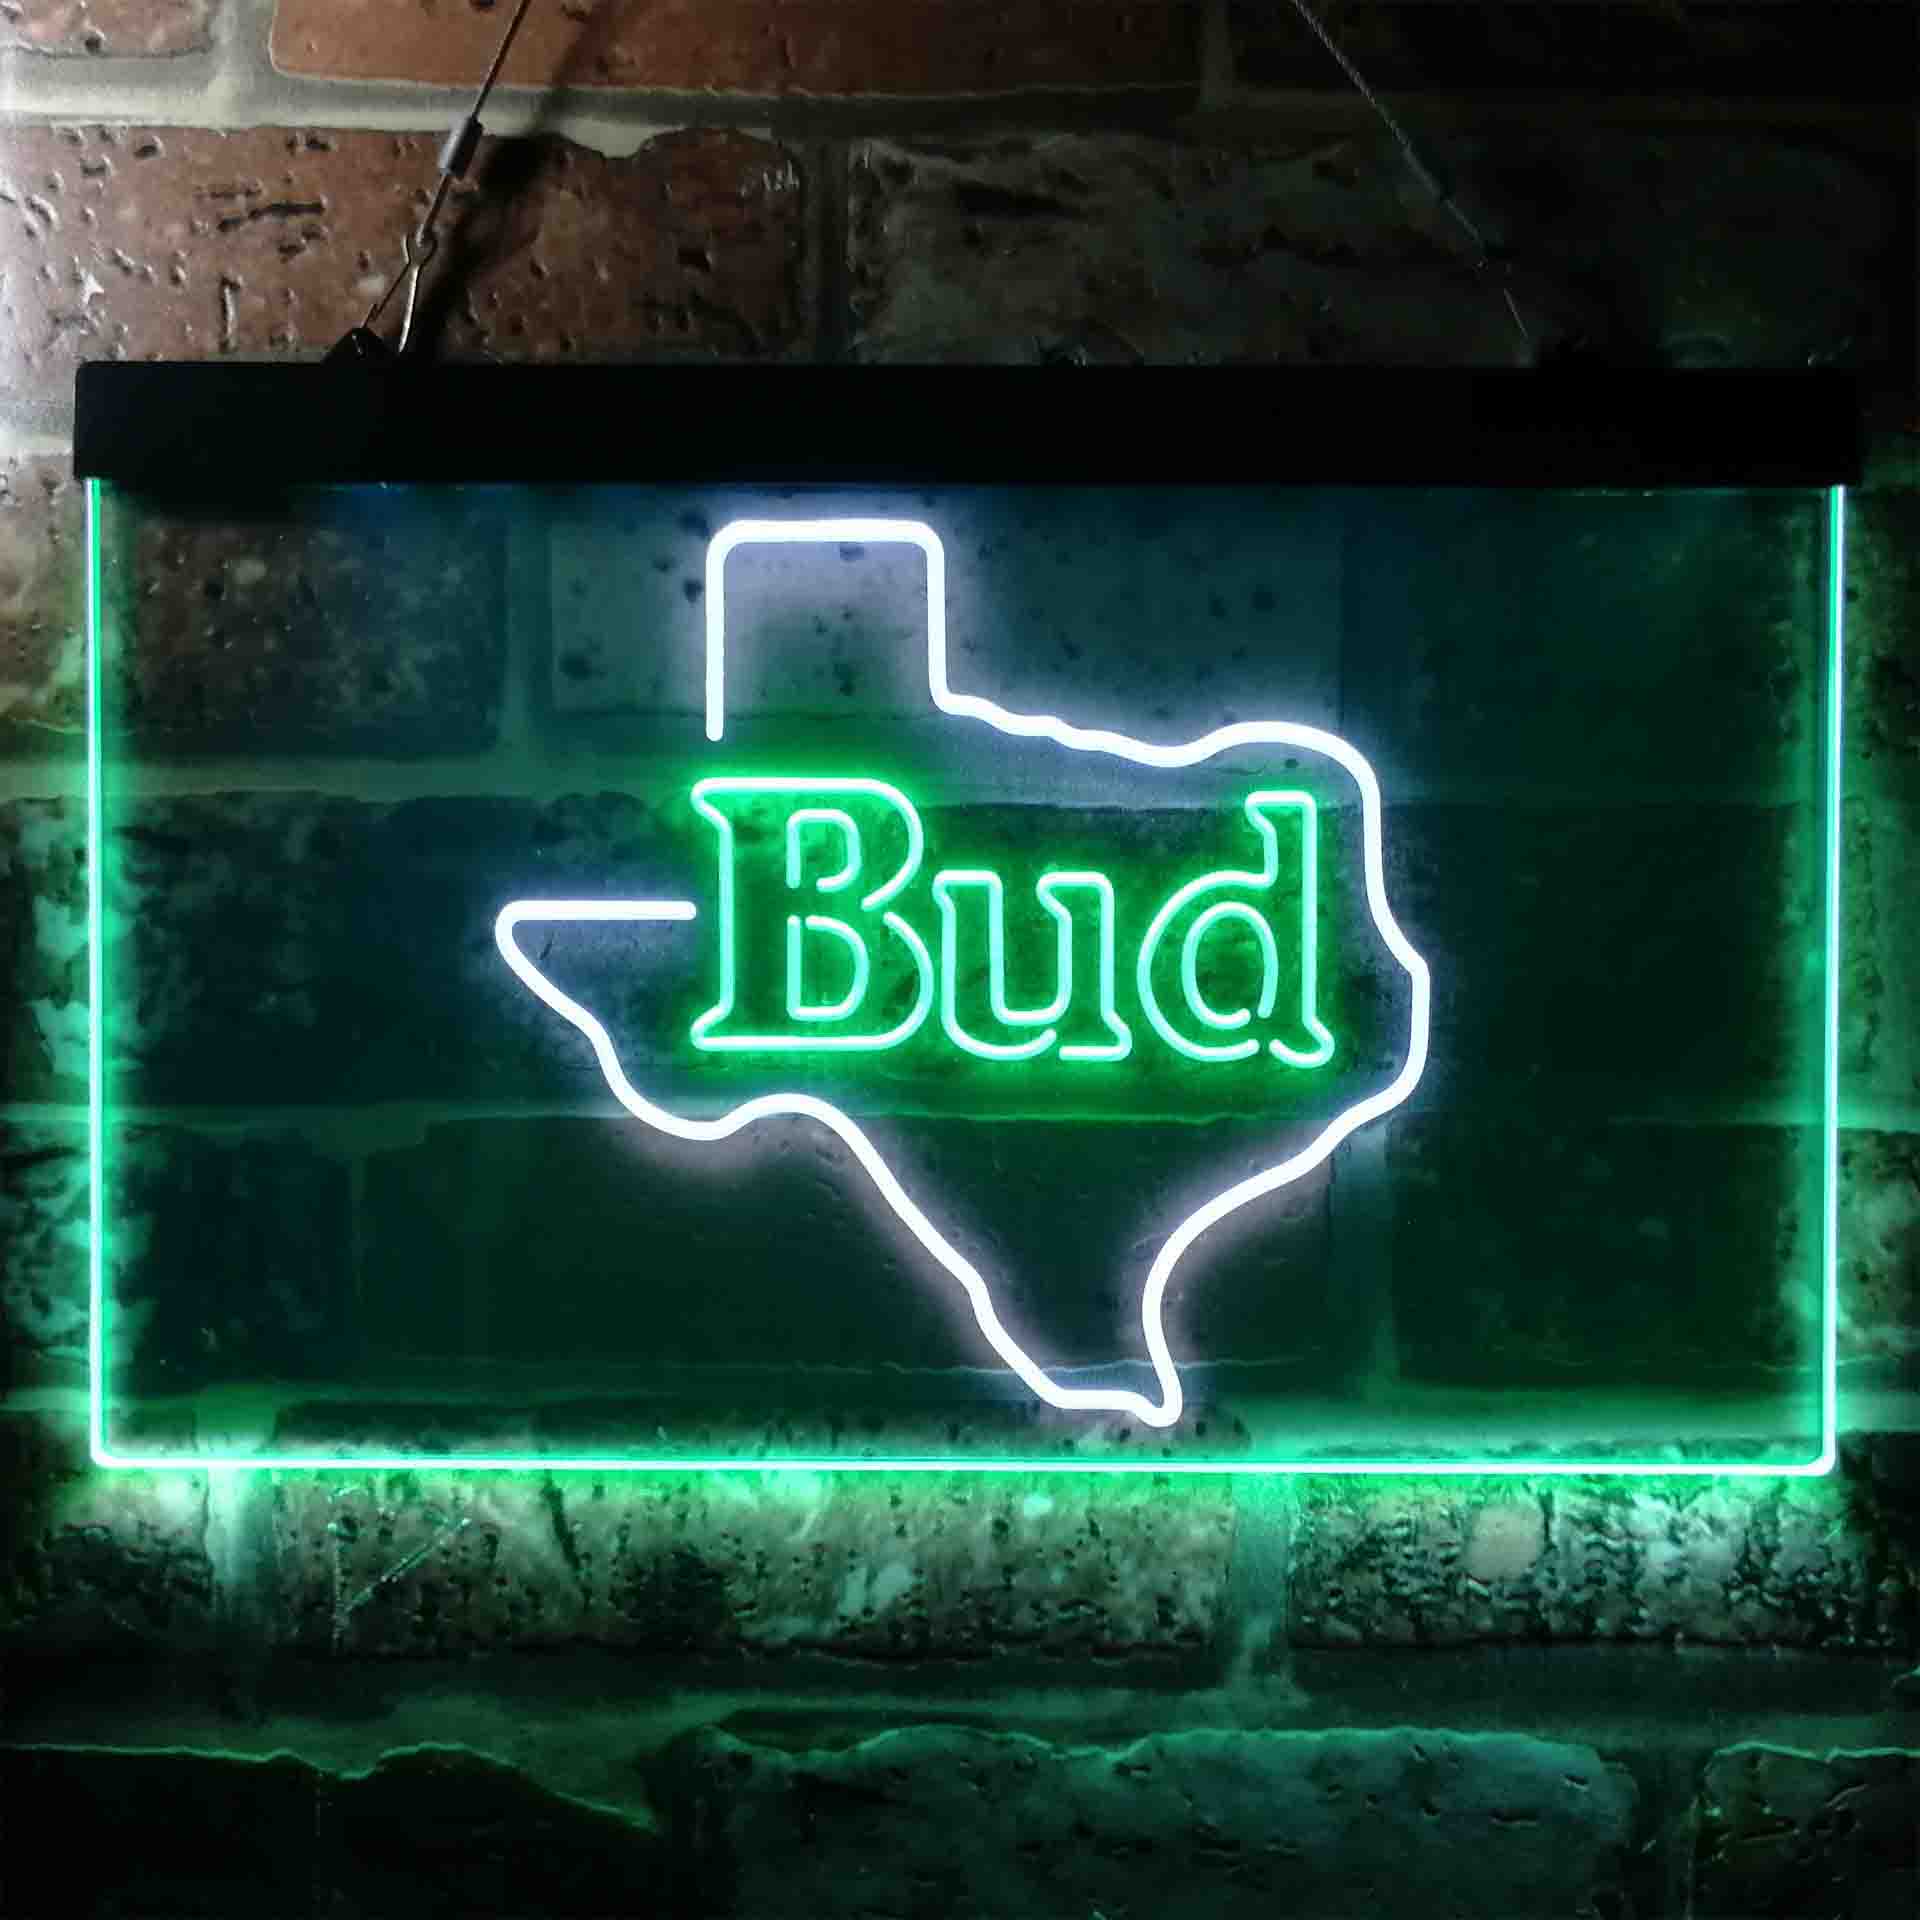 Bud Texsa Neon-Like LED Sign